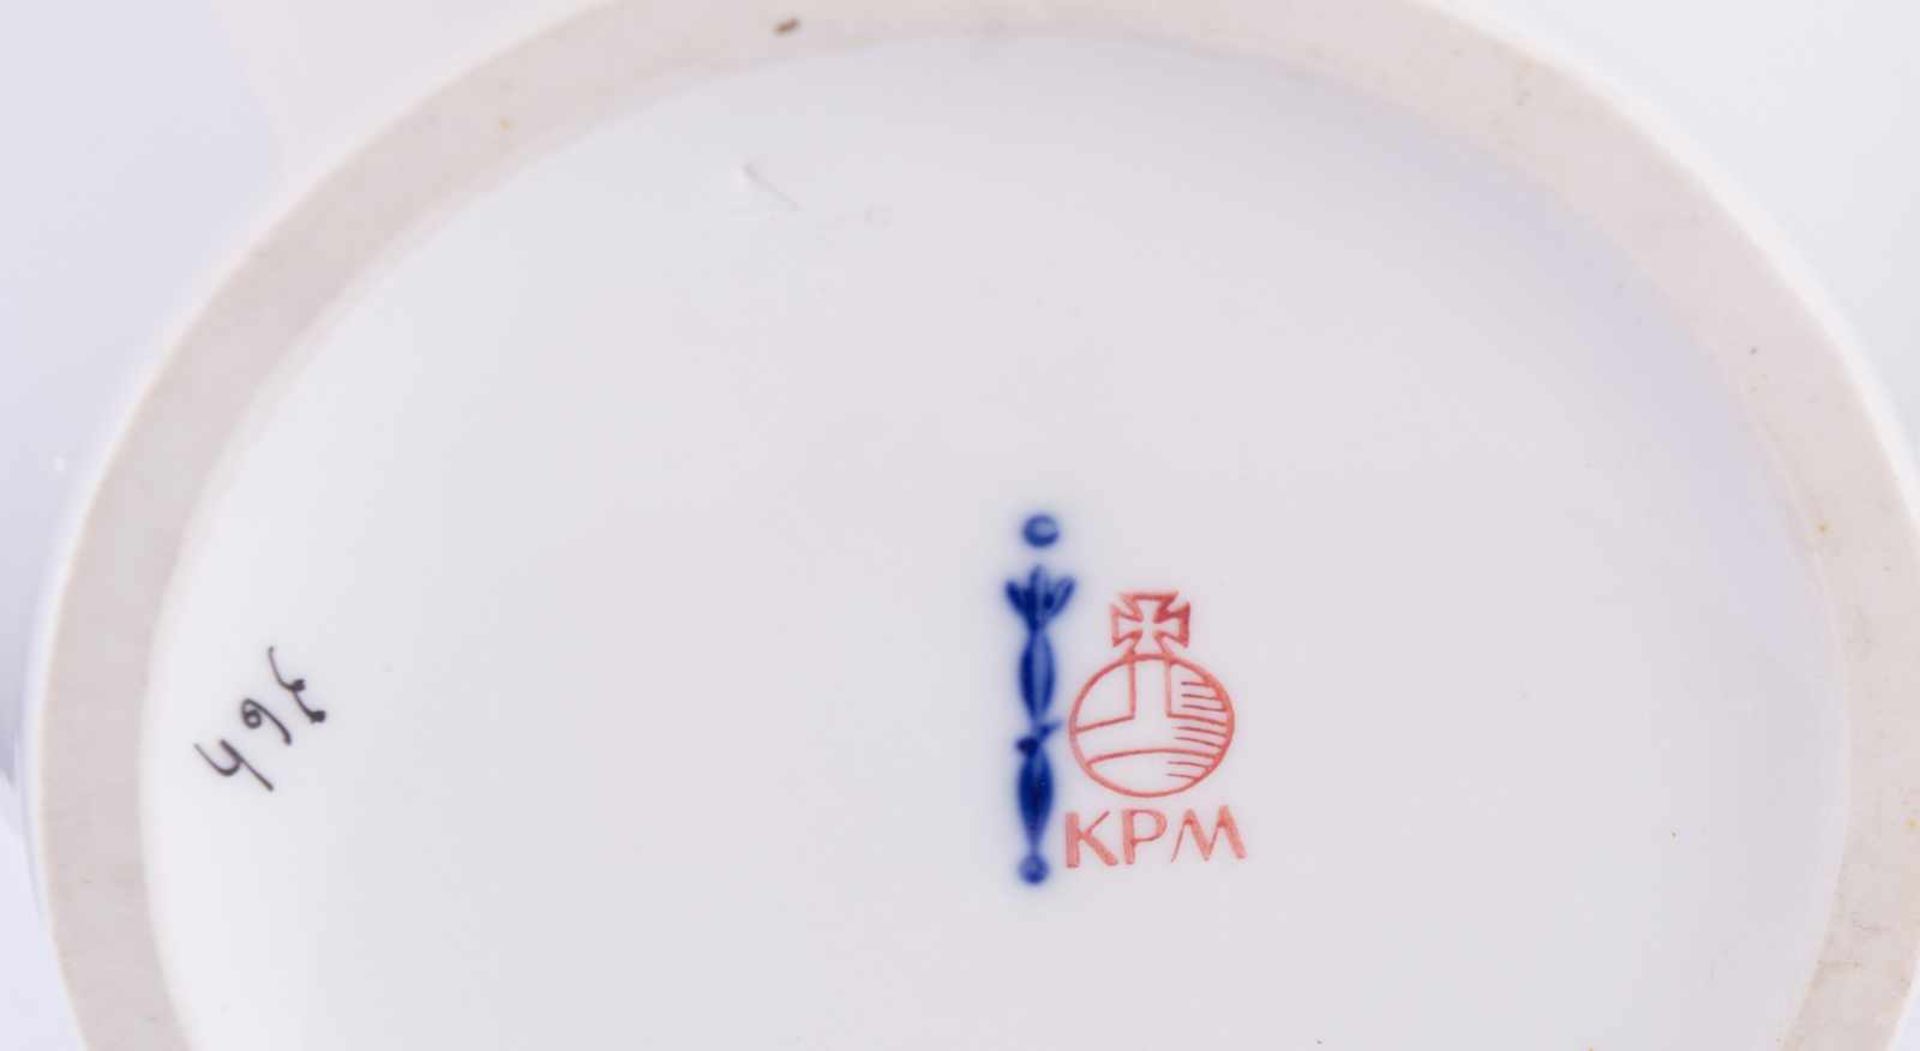 Vase KPM Berlinpolychrome Blumenmalerei, Goldrand, unterm Stand blaue Zeptermarke und roter - Bild 4 aus 4